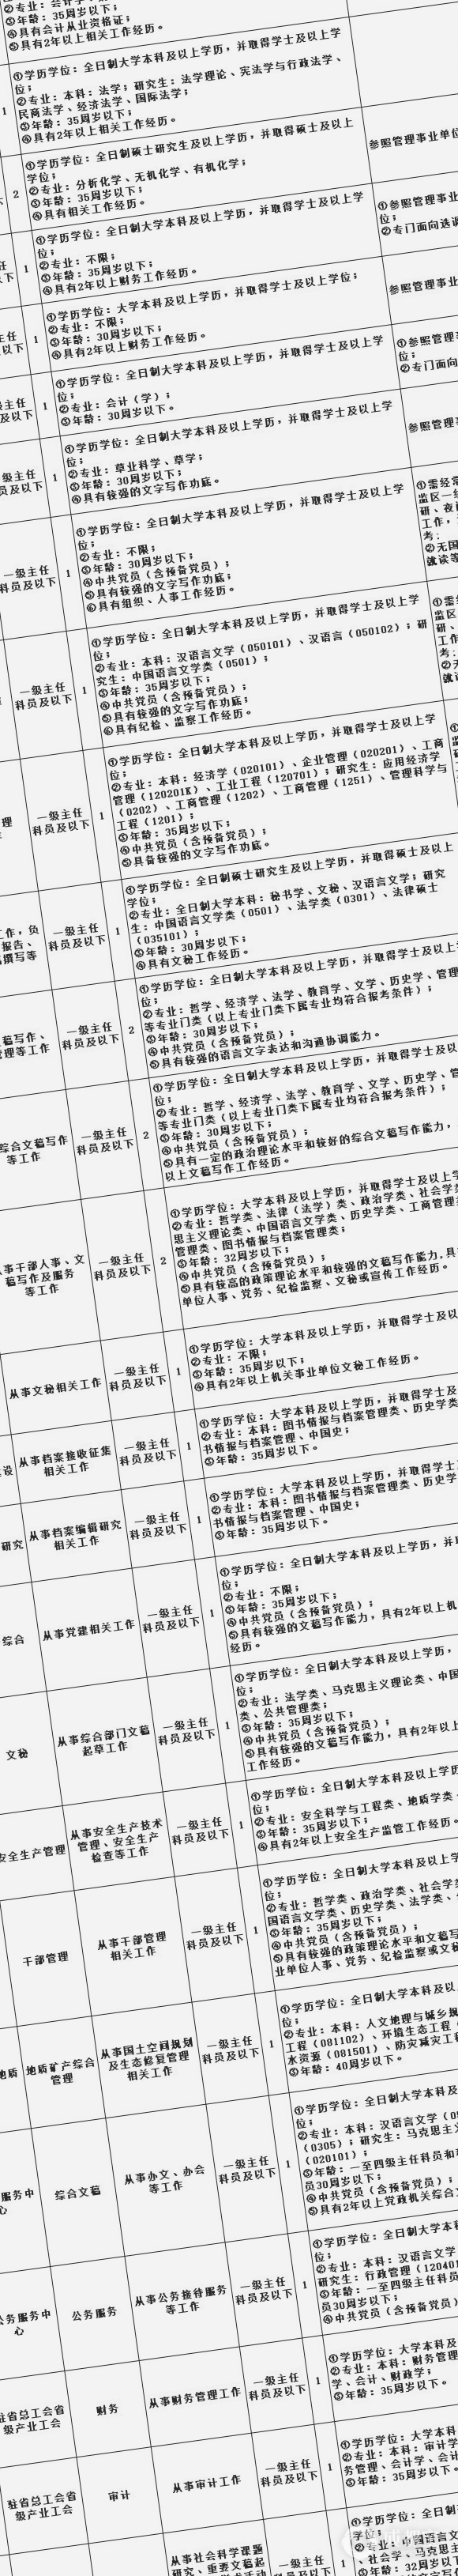 020年四川省直机关公开遴选、选调94名公务员（附职位表）